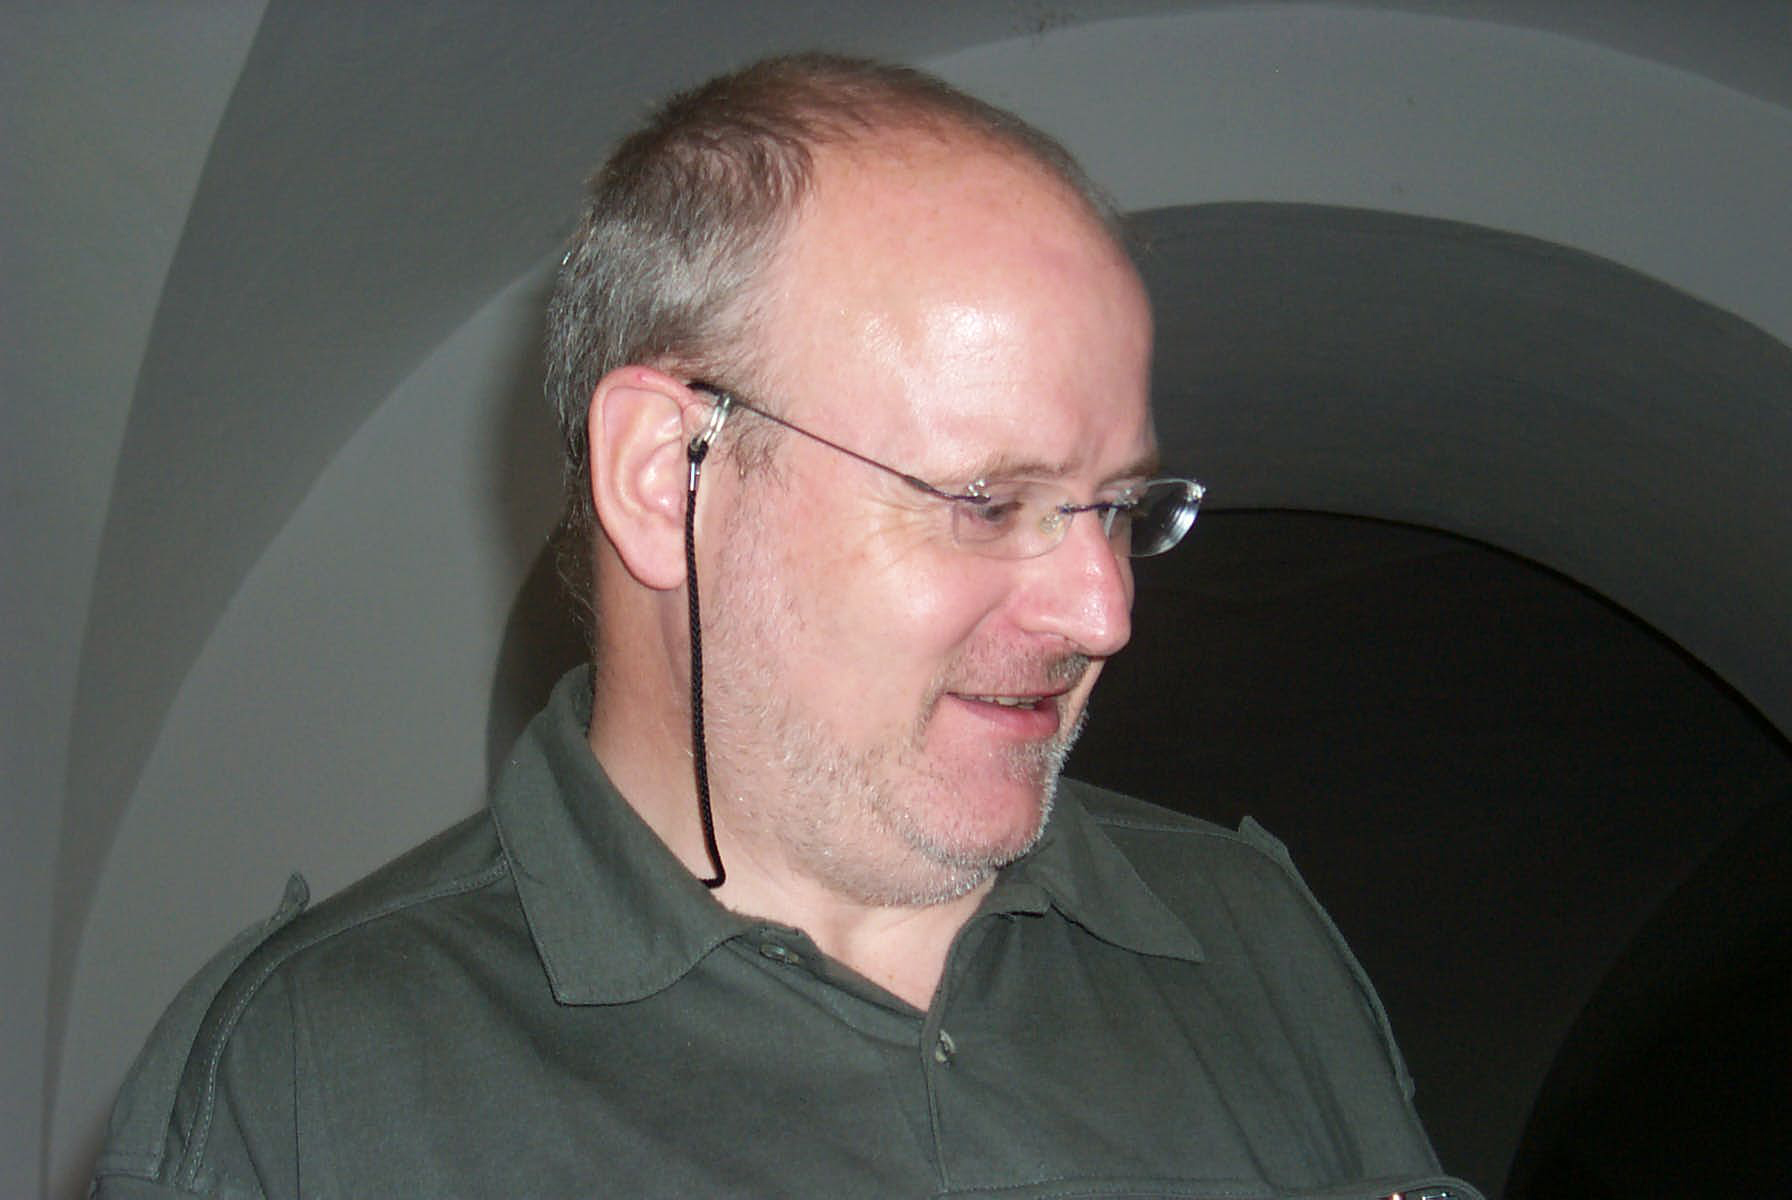 Volker Brandt